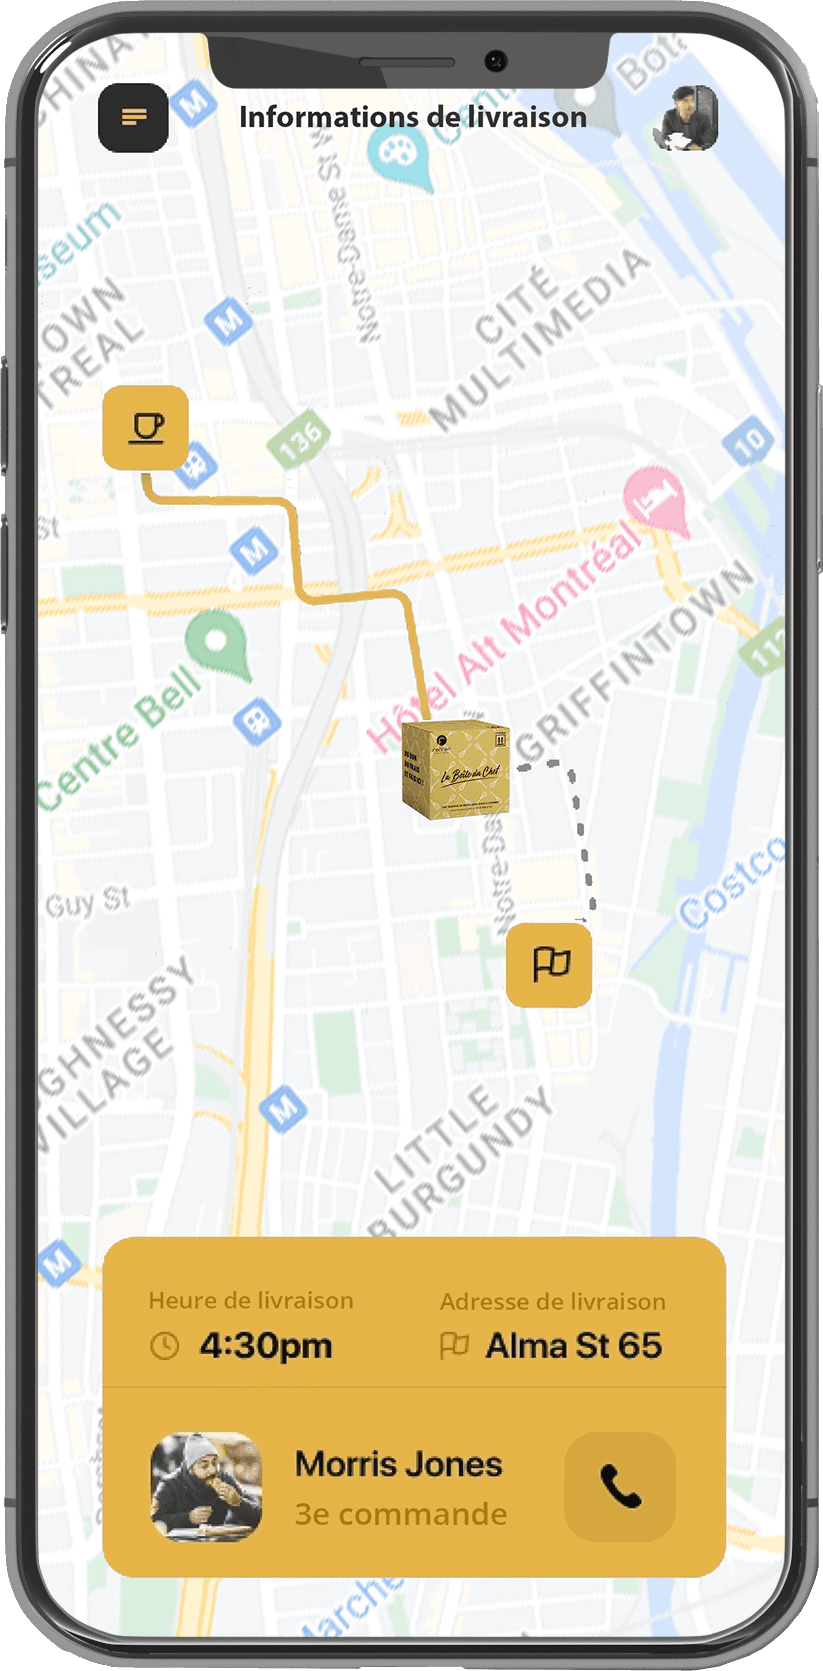 Les routes optimisées sont disponibles sur l’application mobile et sont mises à jour en temps réel avec l’utilisation d’intelligence artificielle et  l’intégration d’Open Street Map, Google Maps et Waze.